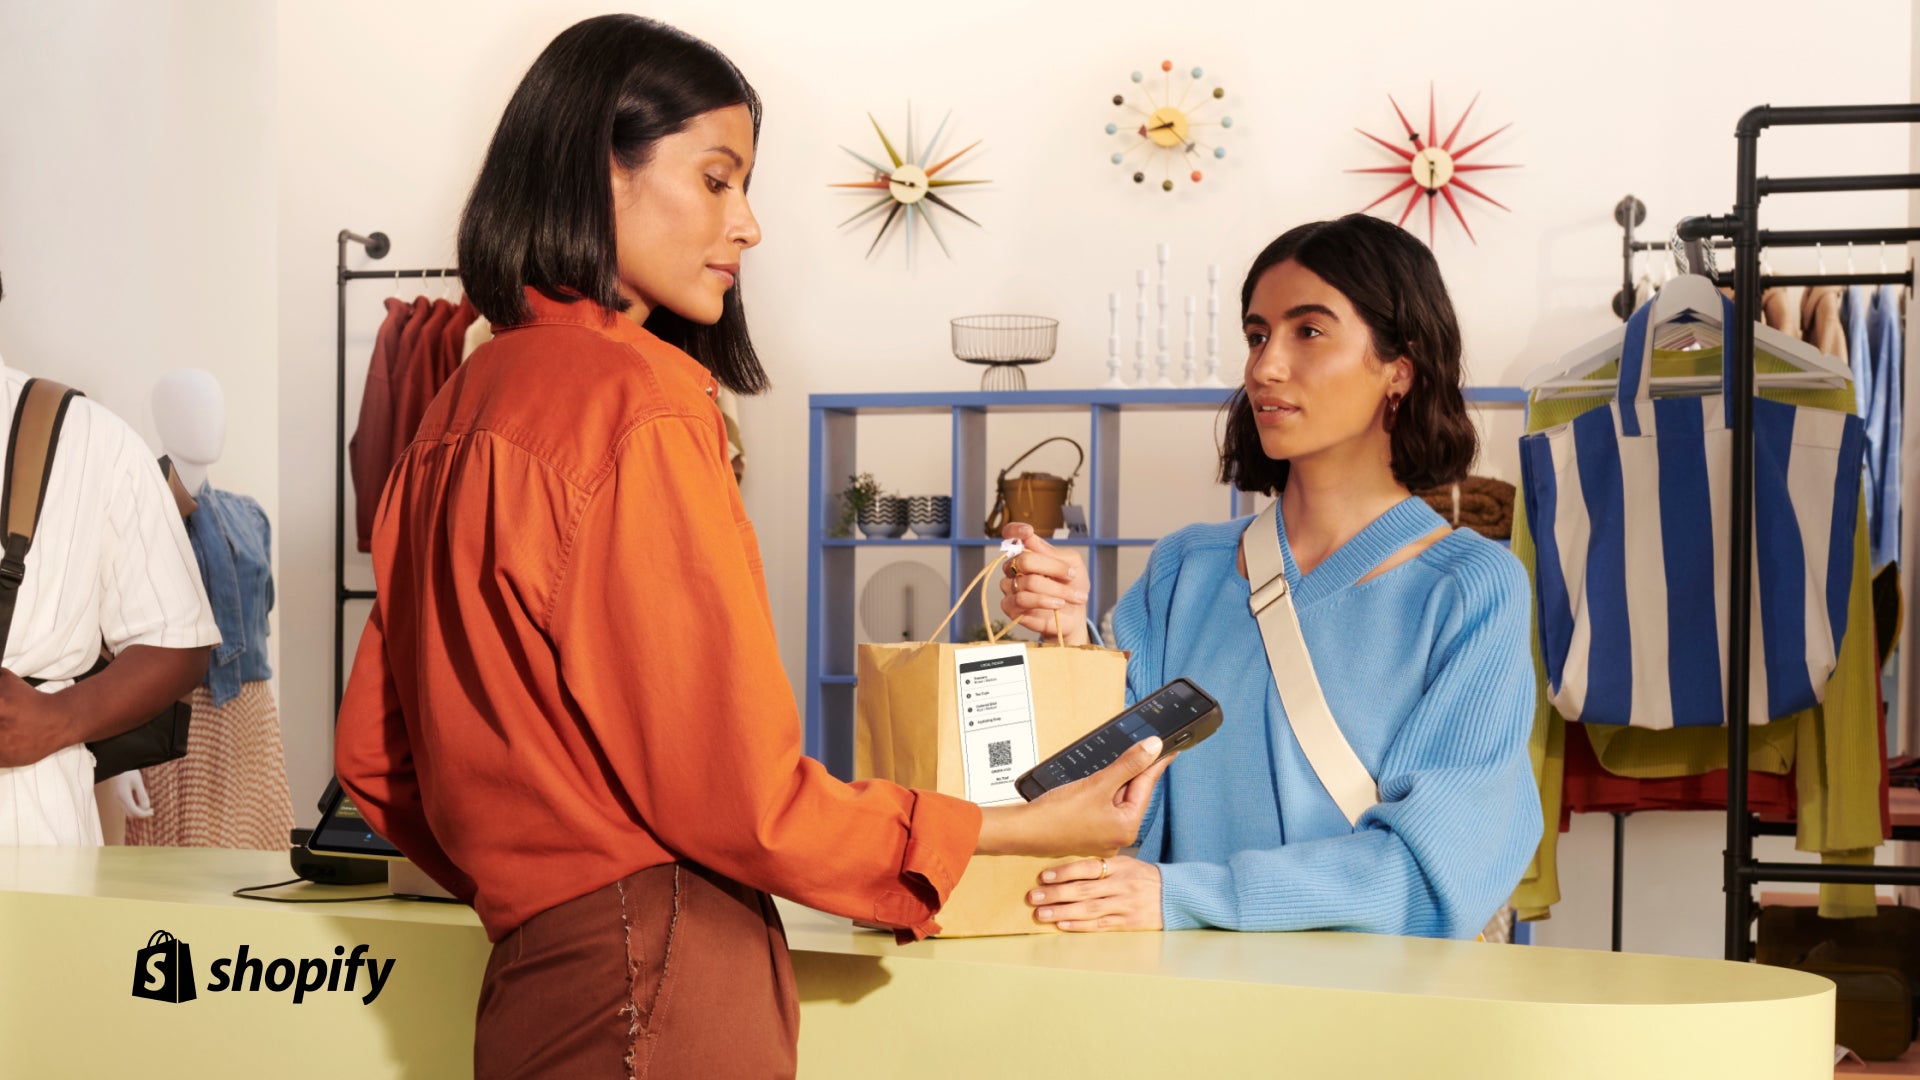 Eine Frau in einem blauen Pullover steht an der Kasse und nimmt ihre Tasche entgegen, während eine andere Frau in einem orangefarbenen Hemd auf ihr Handheld-Kassensystem schaut